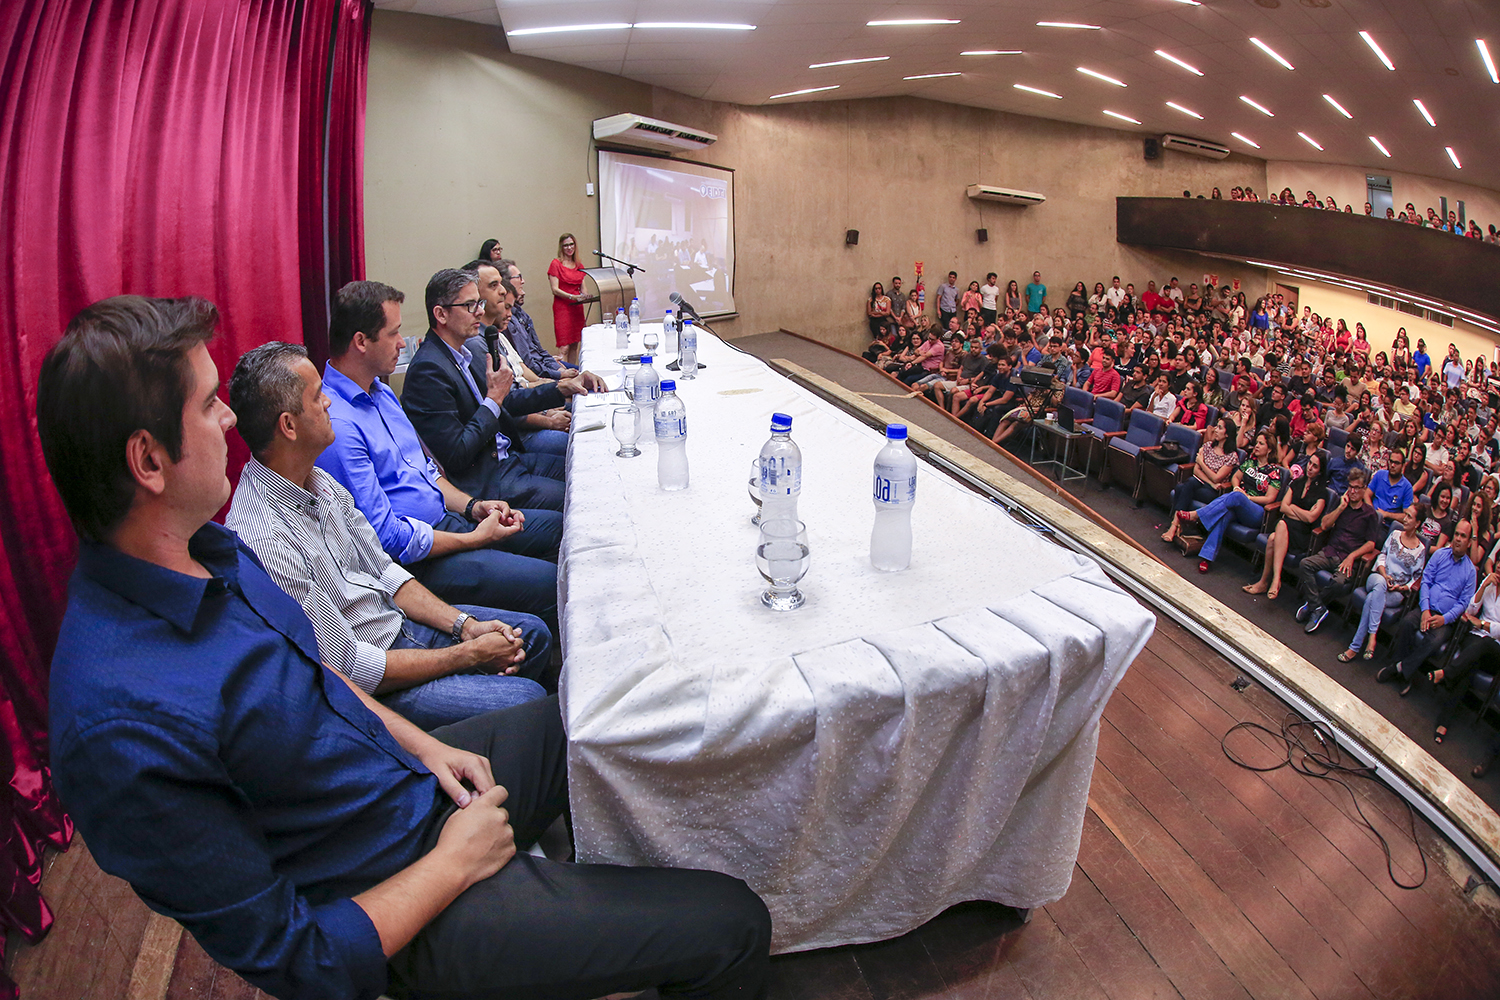 “Qualidade e desempenho acadêmico” foi tema da 4ª edição do evento, que ocorreu de 20 a 24 de novembro. (Foto: Adilson Andrade/Ascom UFS)